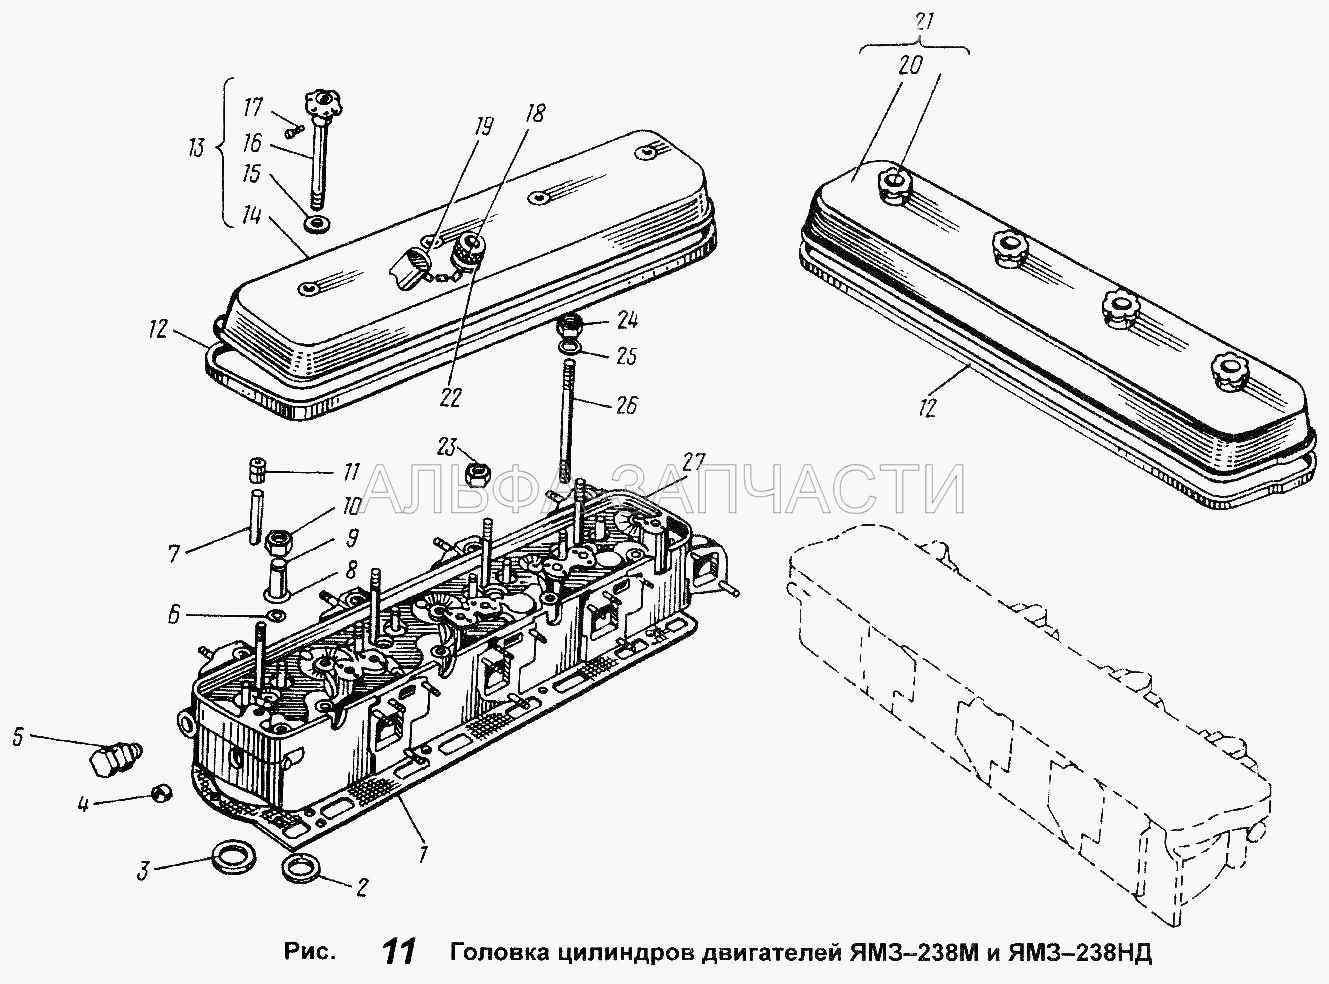 Головка цилиндров двигателей ЯМЗ-238М и ЯМЗ-238НД (236-1003110-В3 Седло выпускного клапана) 